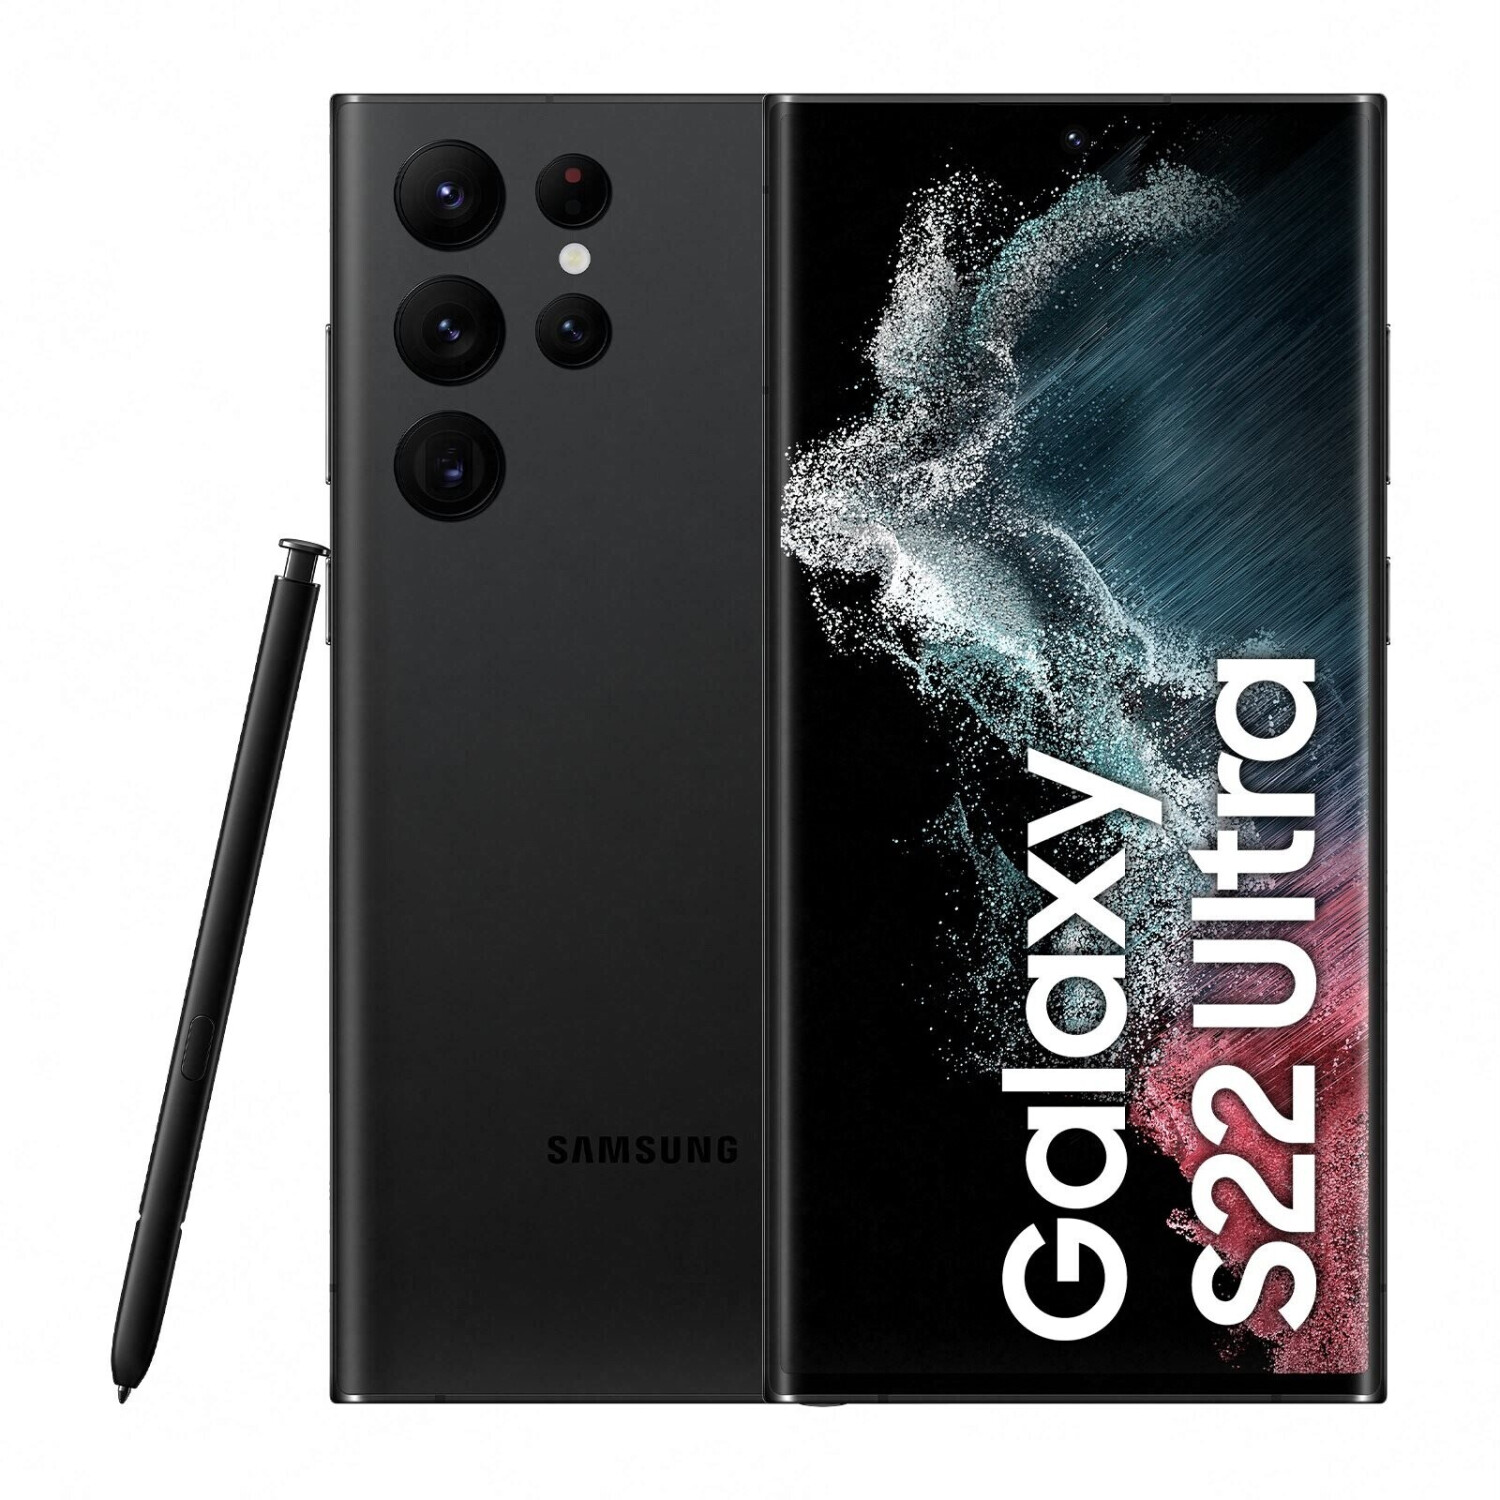 Le Samsung Galaxy S22 Ultra voit son prix dégringoler, l'offre est dingue